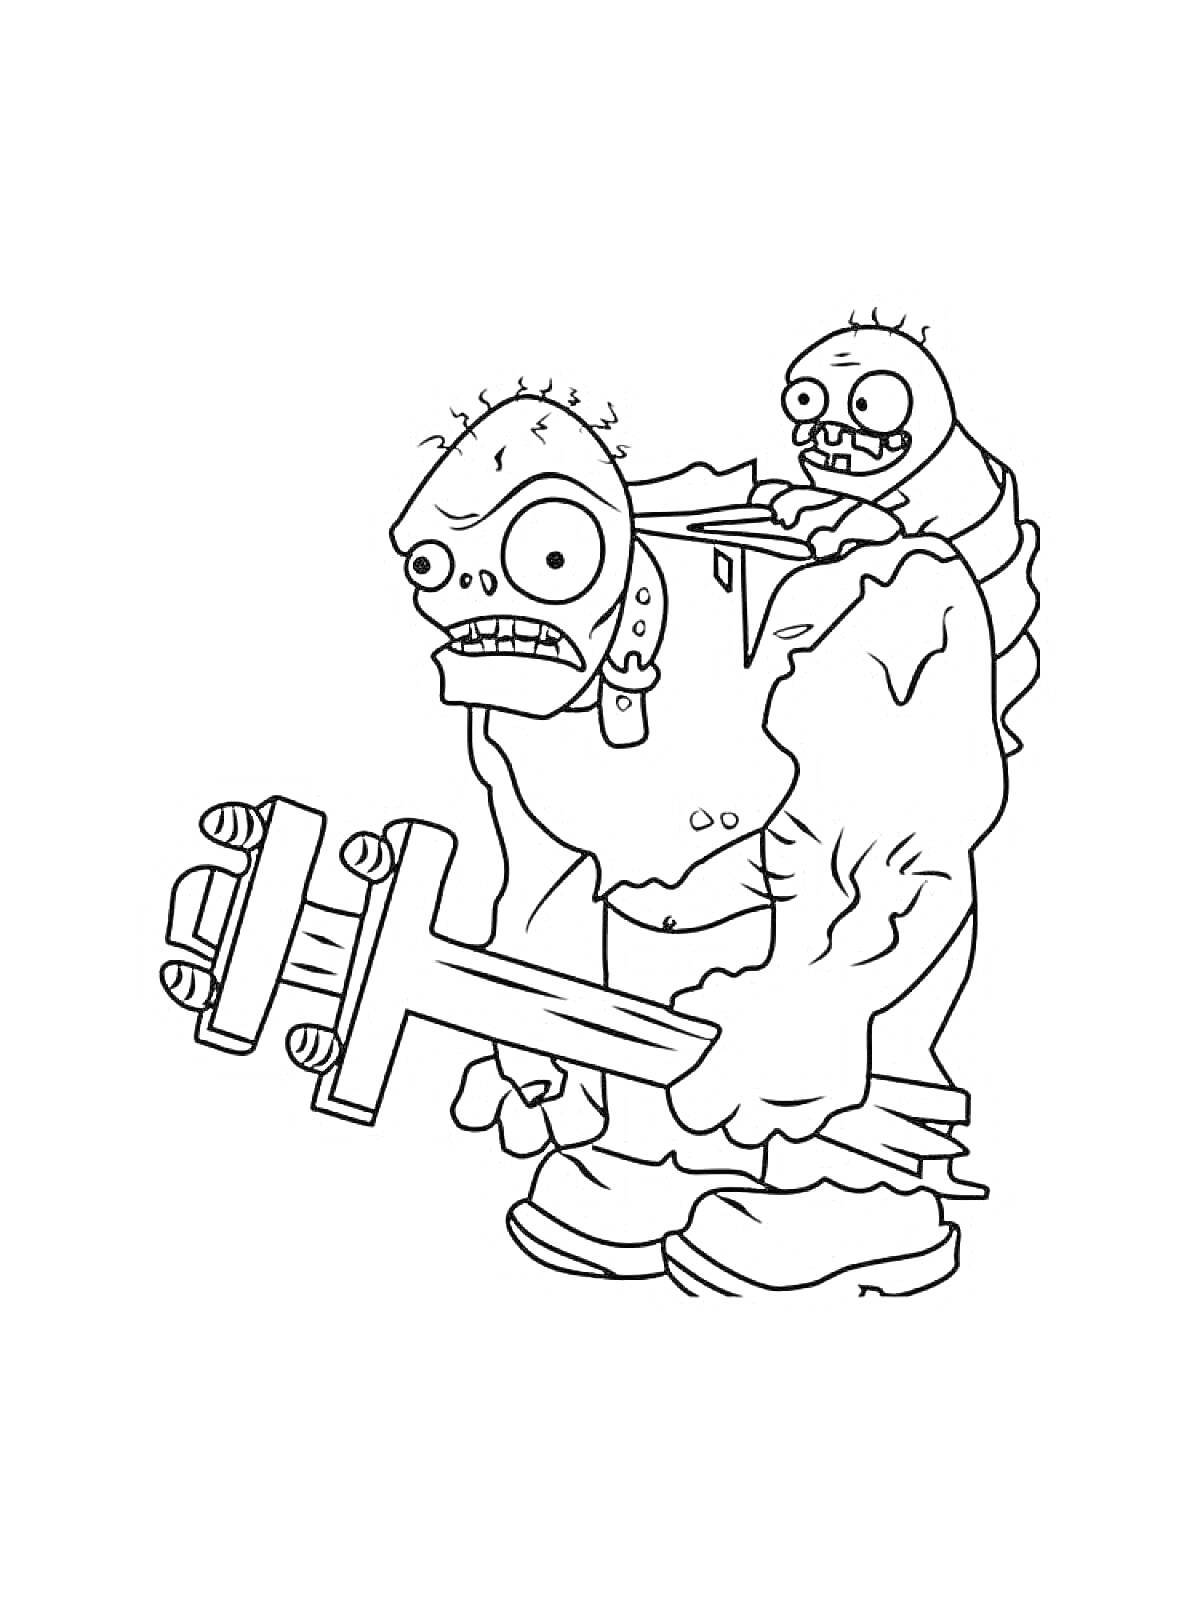 Раскраска Зомби с кувалдой и маленьким зомби на спине